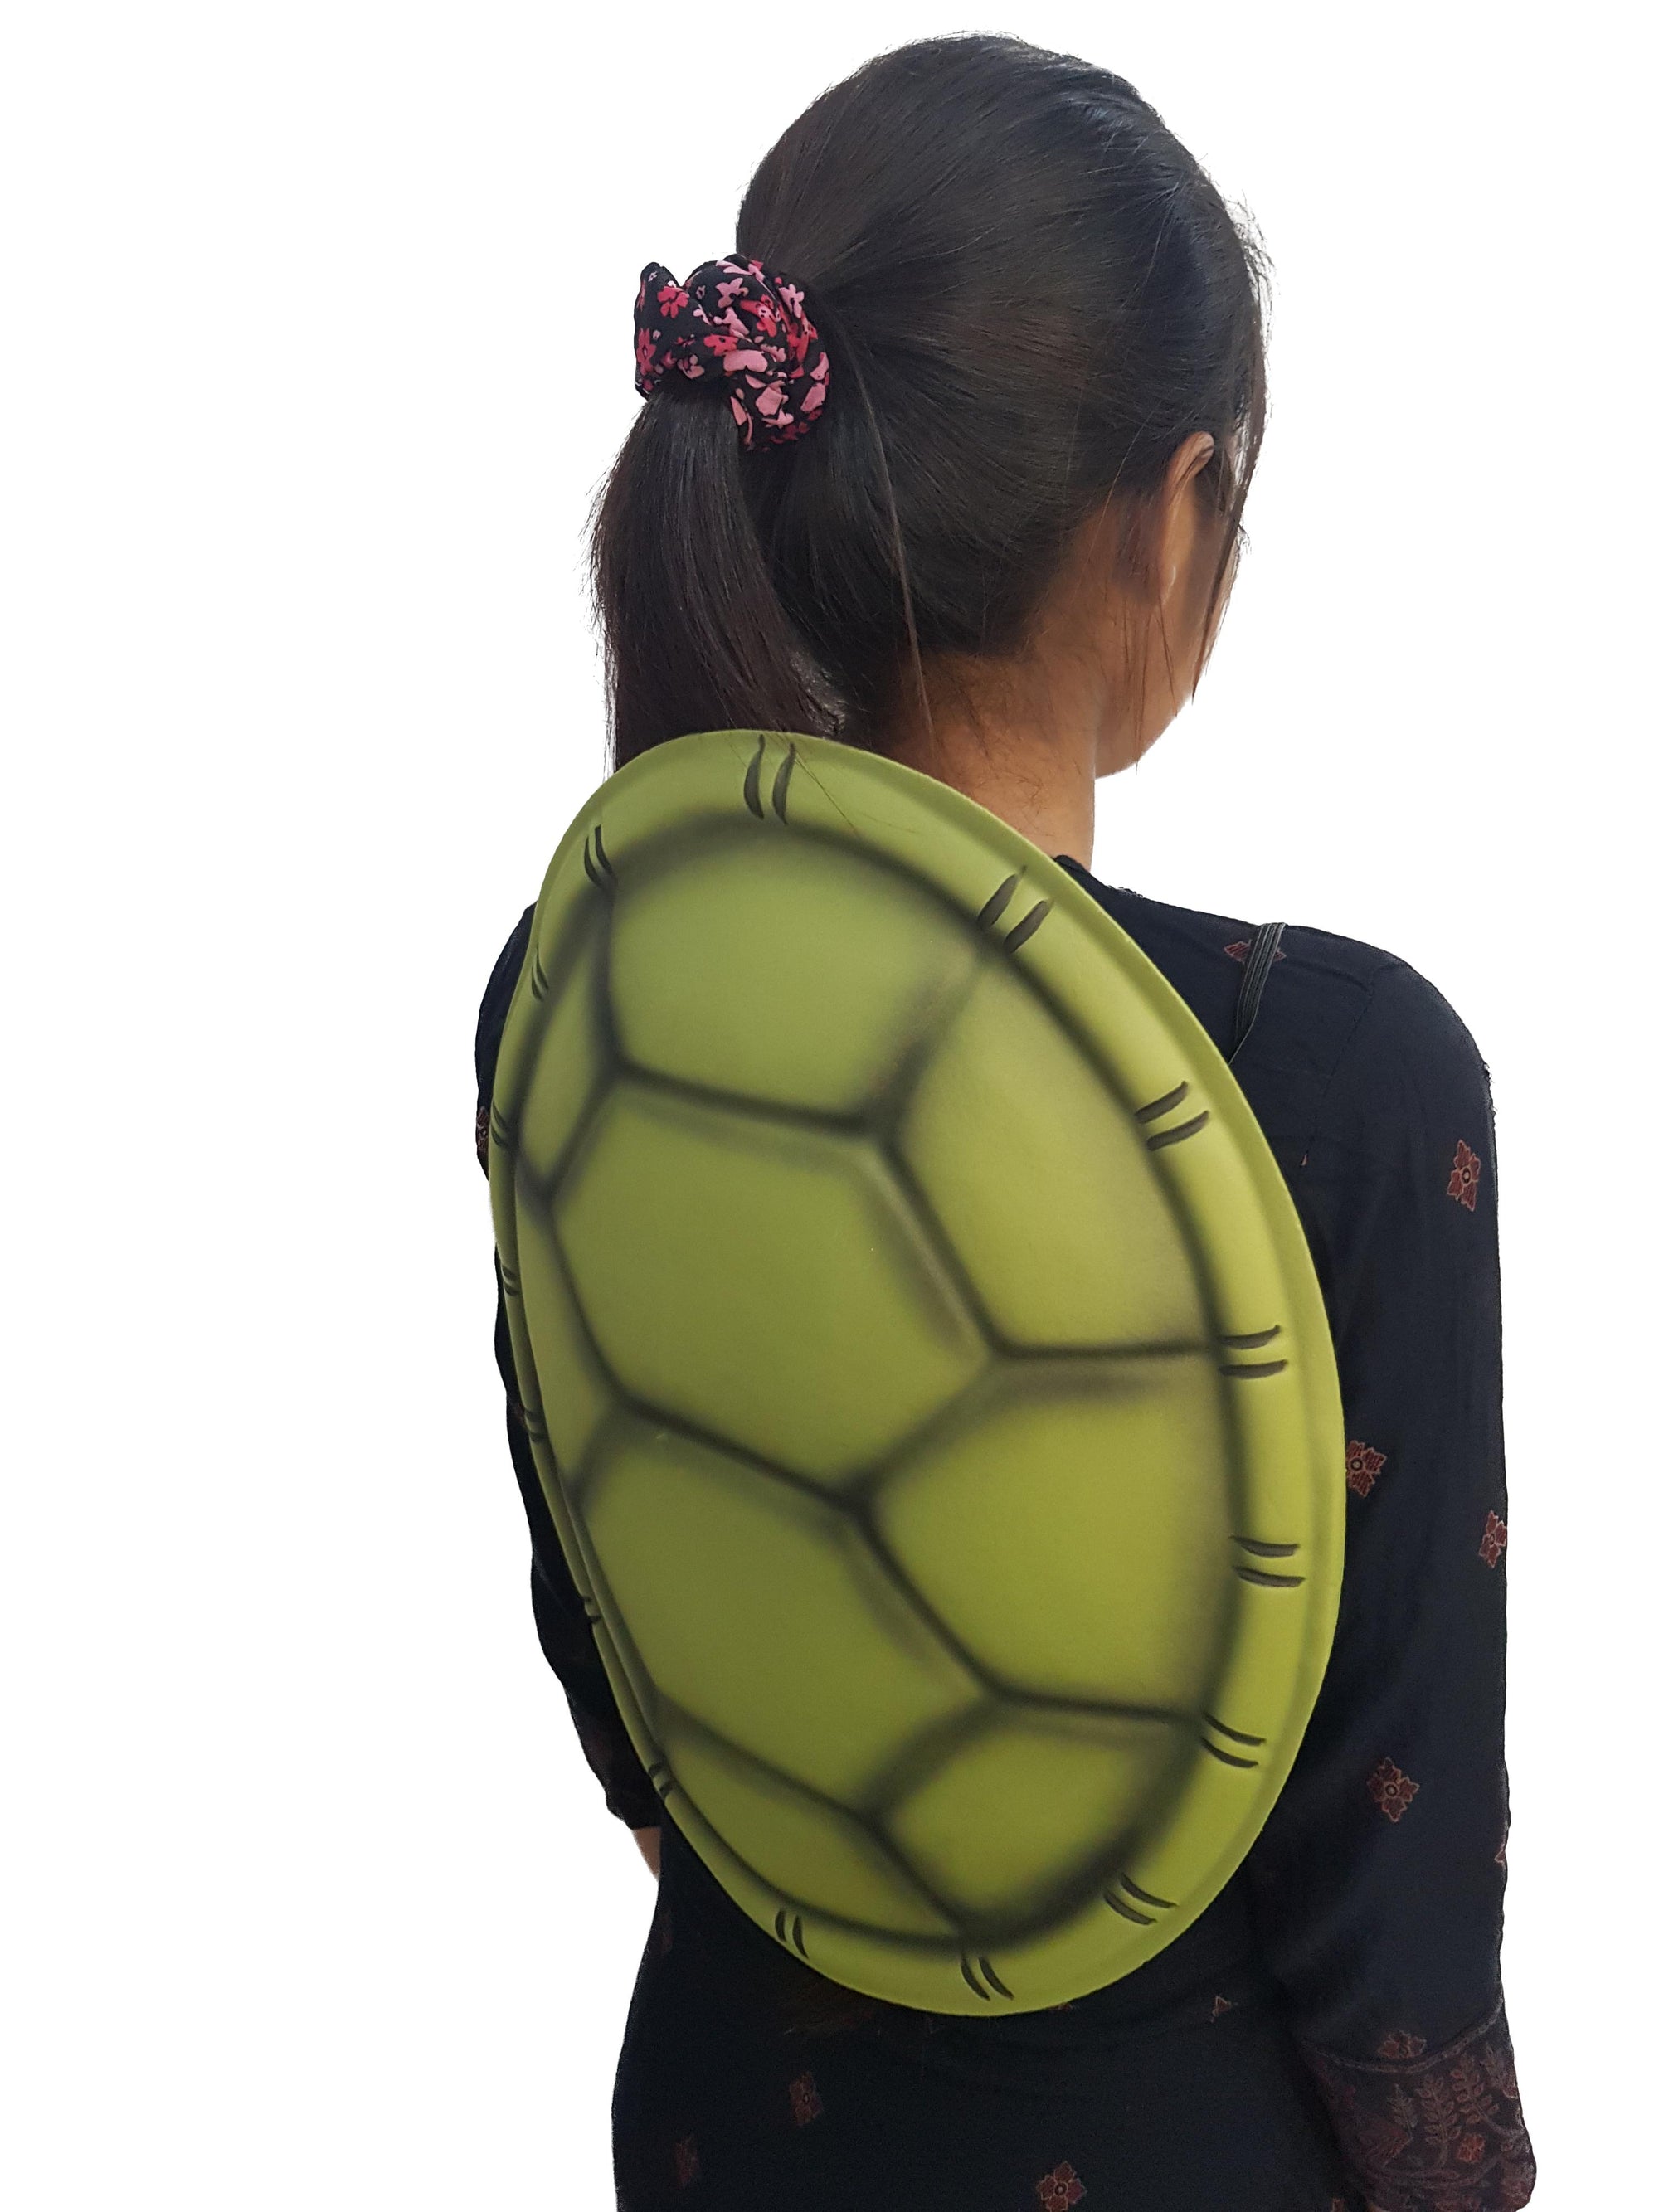 Mutant Ninja Turtle Shell Soft Foam Halloween Kids Adults Fancy Dress